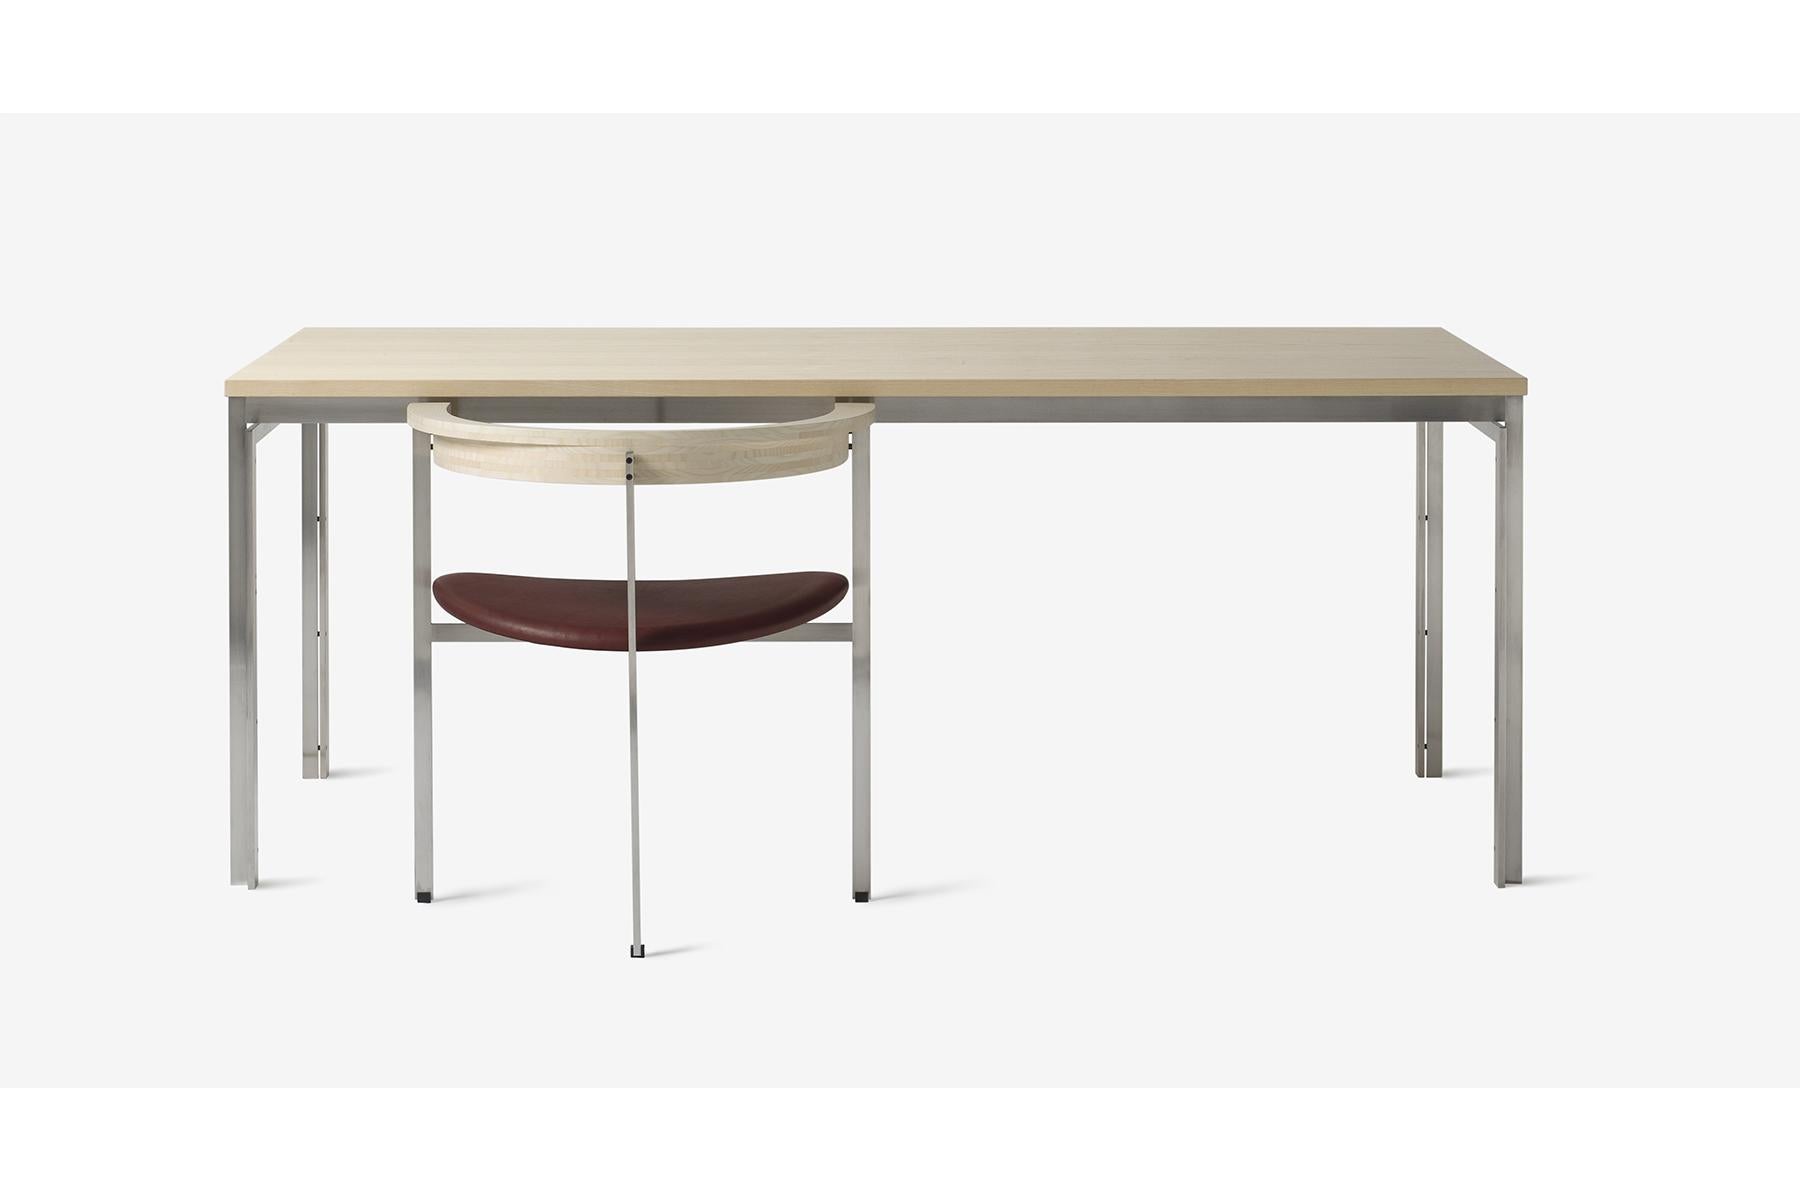 PK11 est une chaise complexe et belle portée par une structure à trois pieds en acier inoxydable satiné et brossé. La chaise a été conçue par Poul Kjærholm en 1957 pour accompagner la table de travail PK51 conçue la même année. Ensemble, les deux